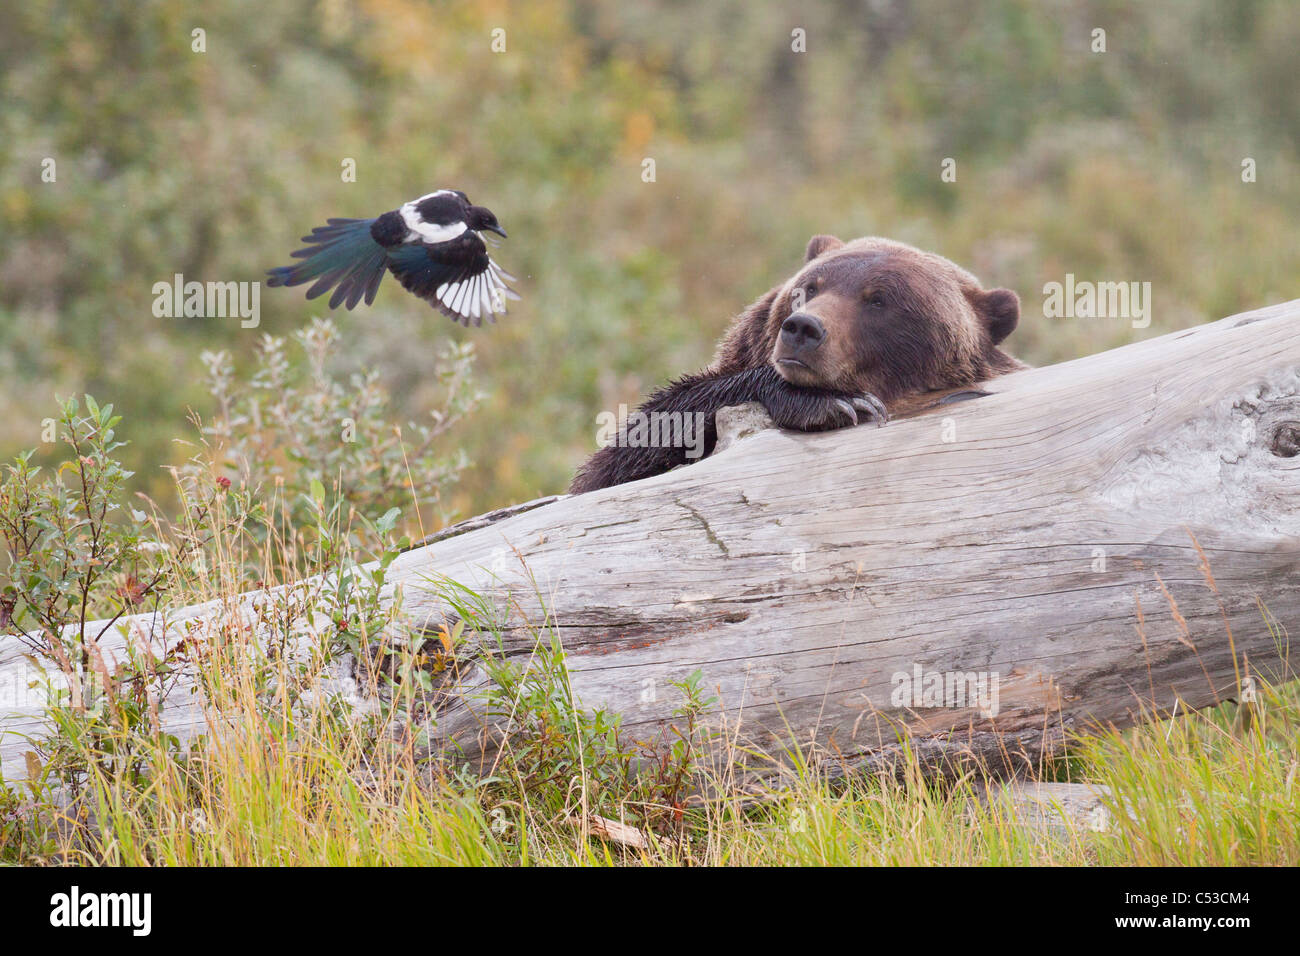 Grizzly bear se trouve sur un journal et regarde une pie voler quelques mètres plus loin, l'Alaska Wildlife Conservation Center, Alaska. Prisonnier Banque D'Images